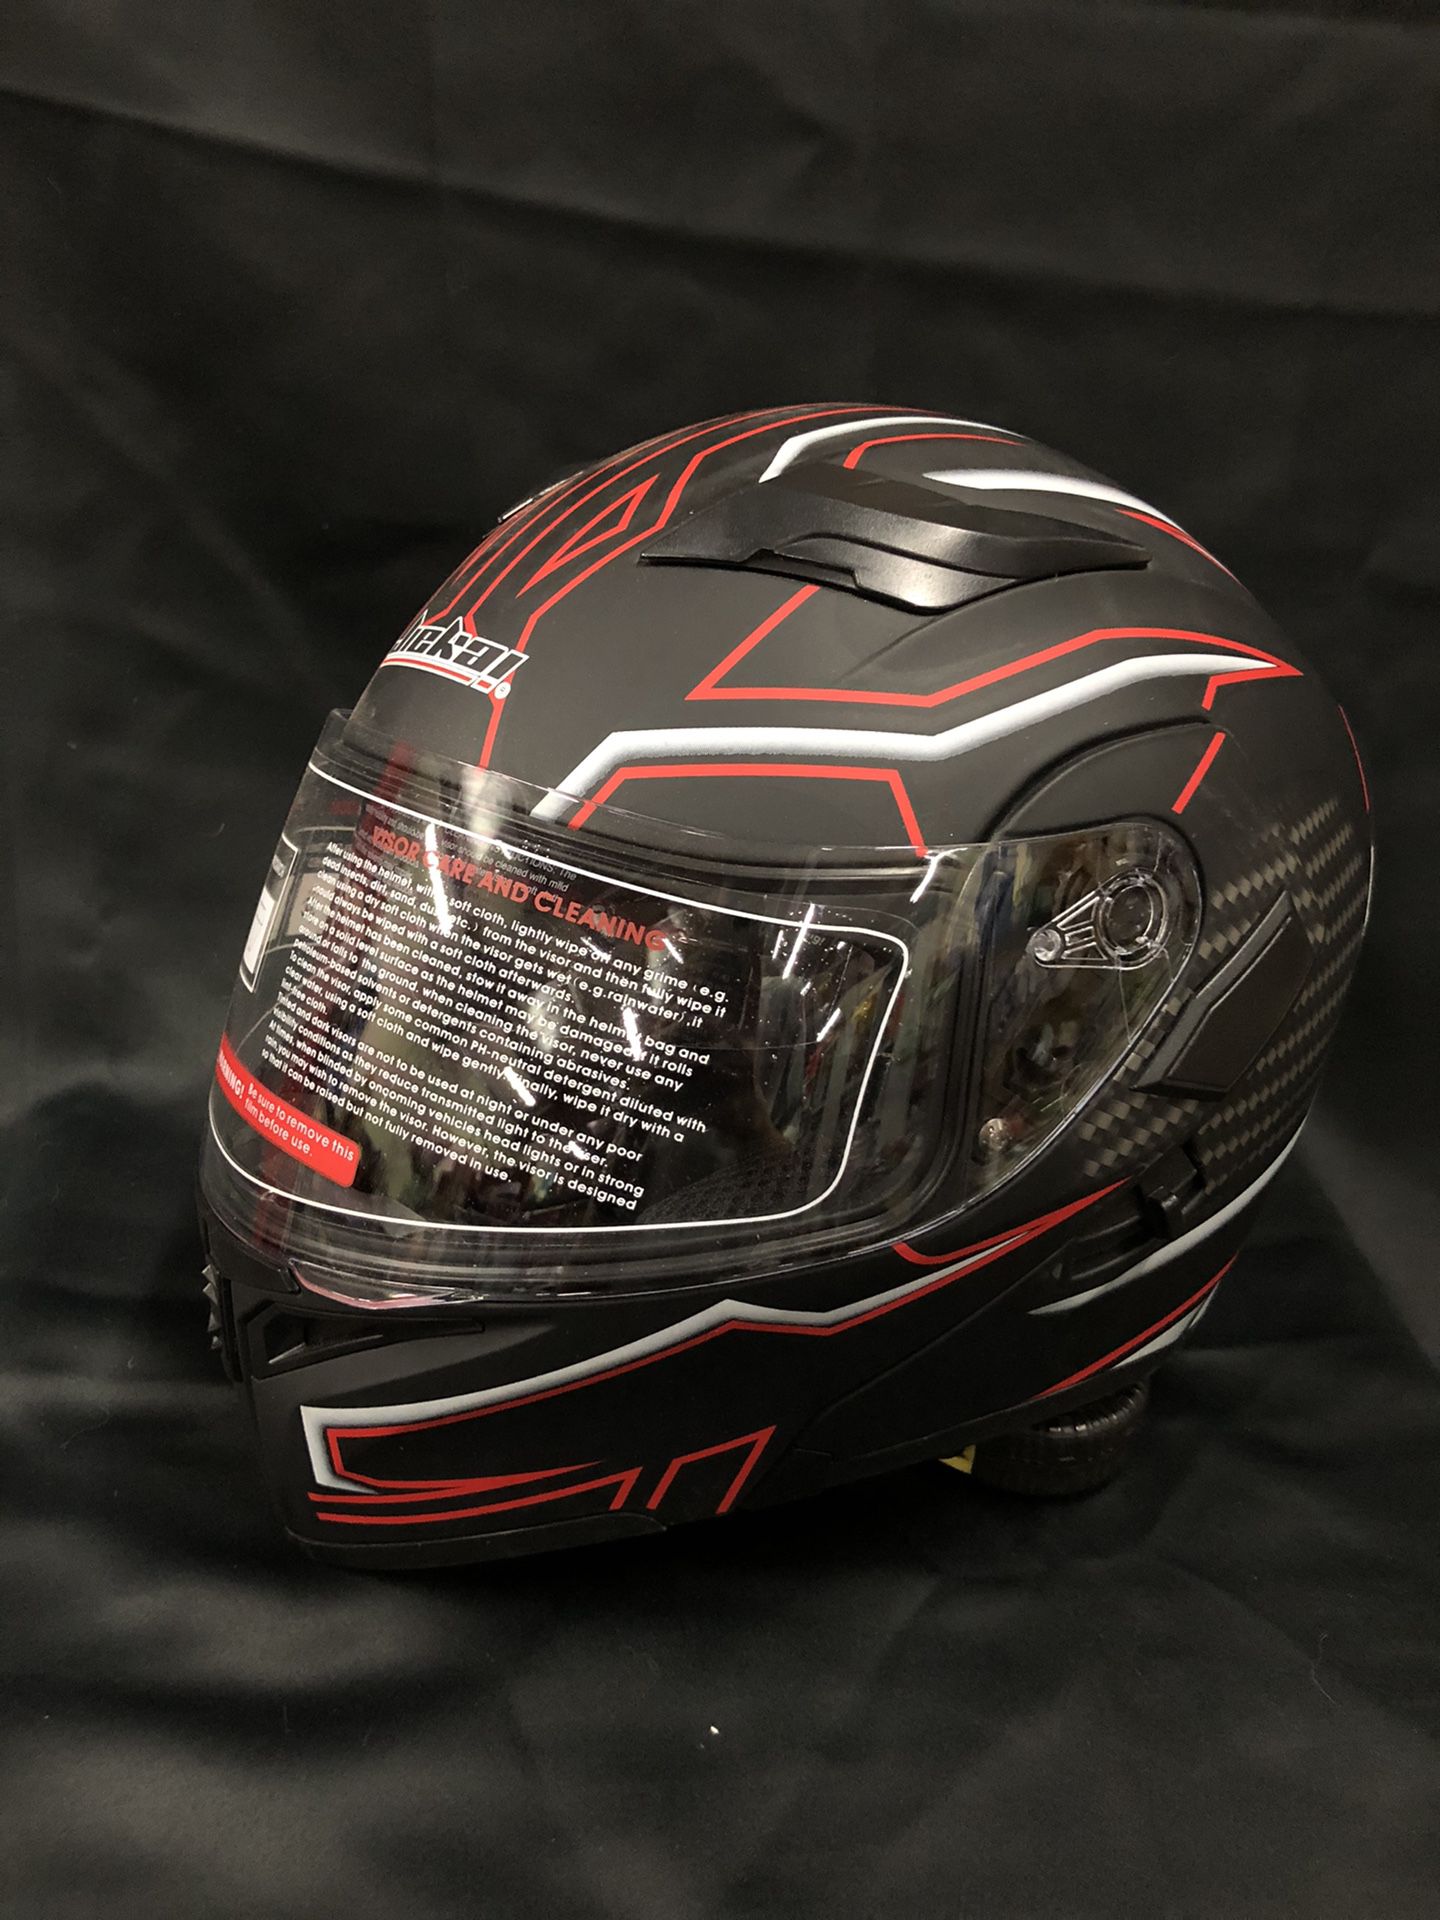 New Motorcycle Helmet